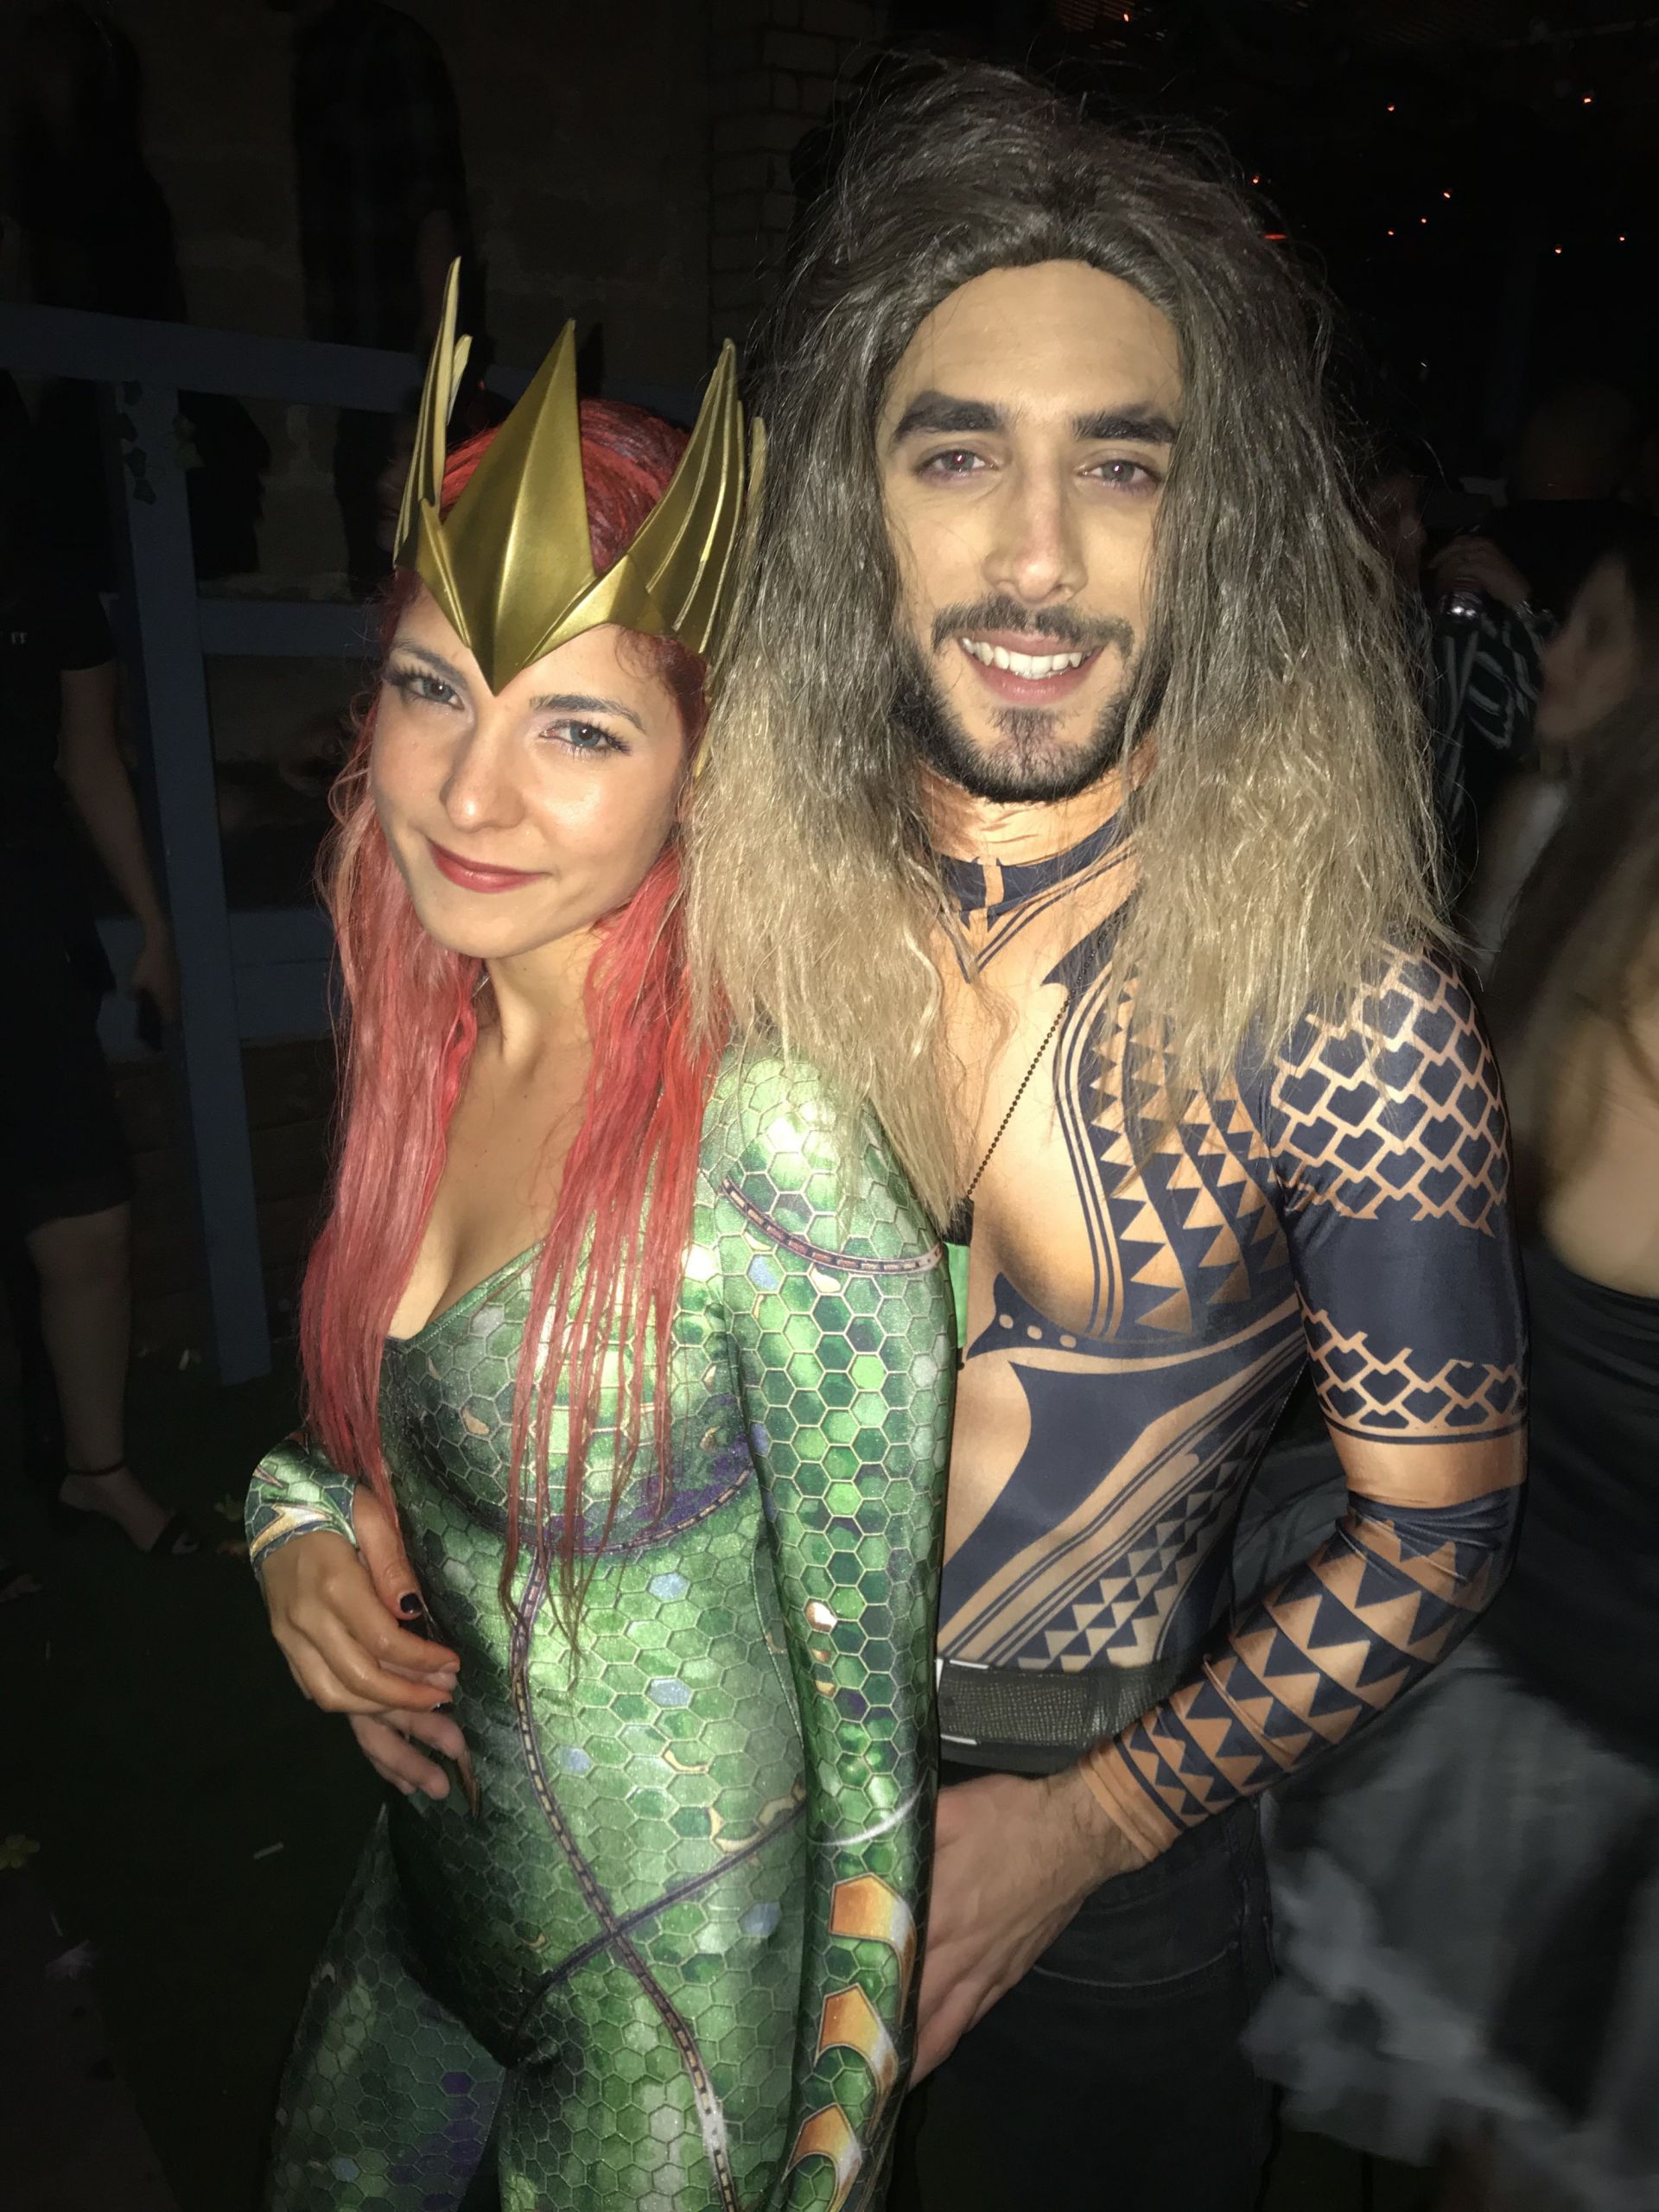 Aquaman Costume DIY
 Aquaman couples costume